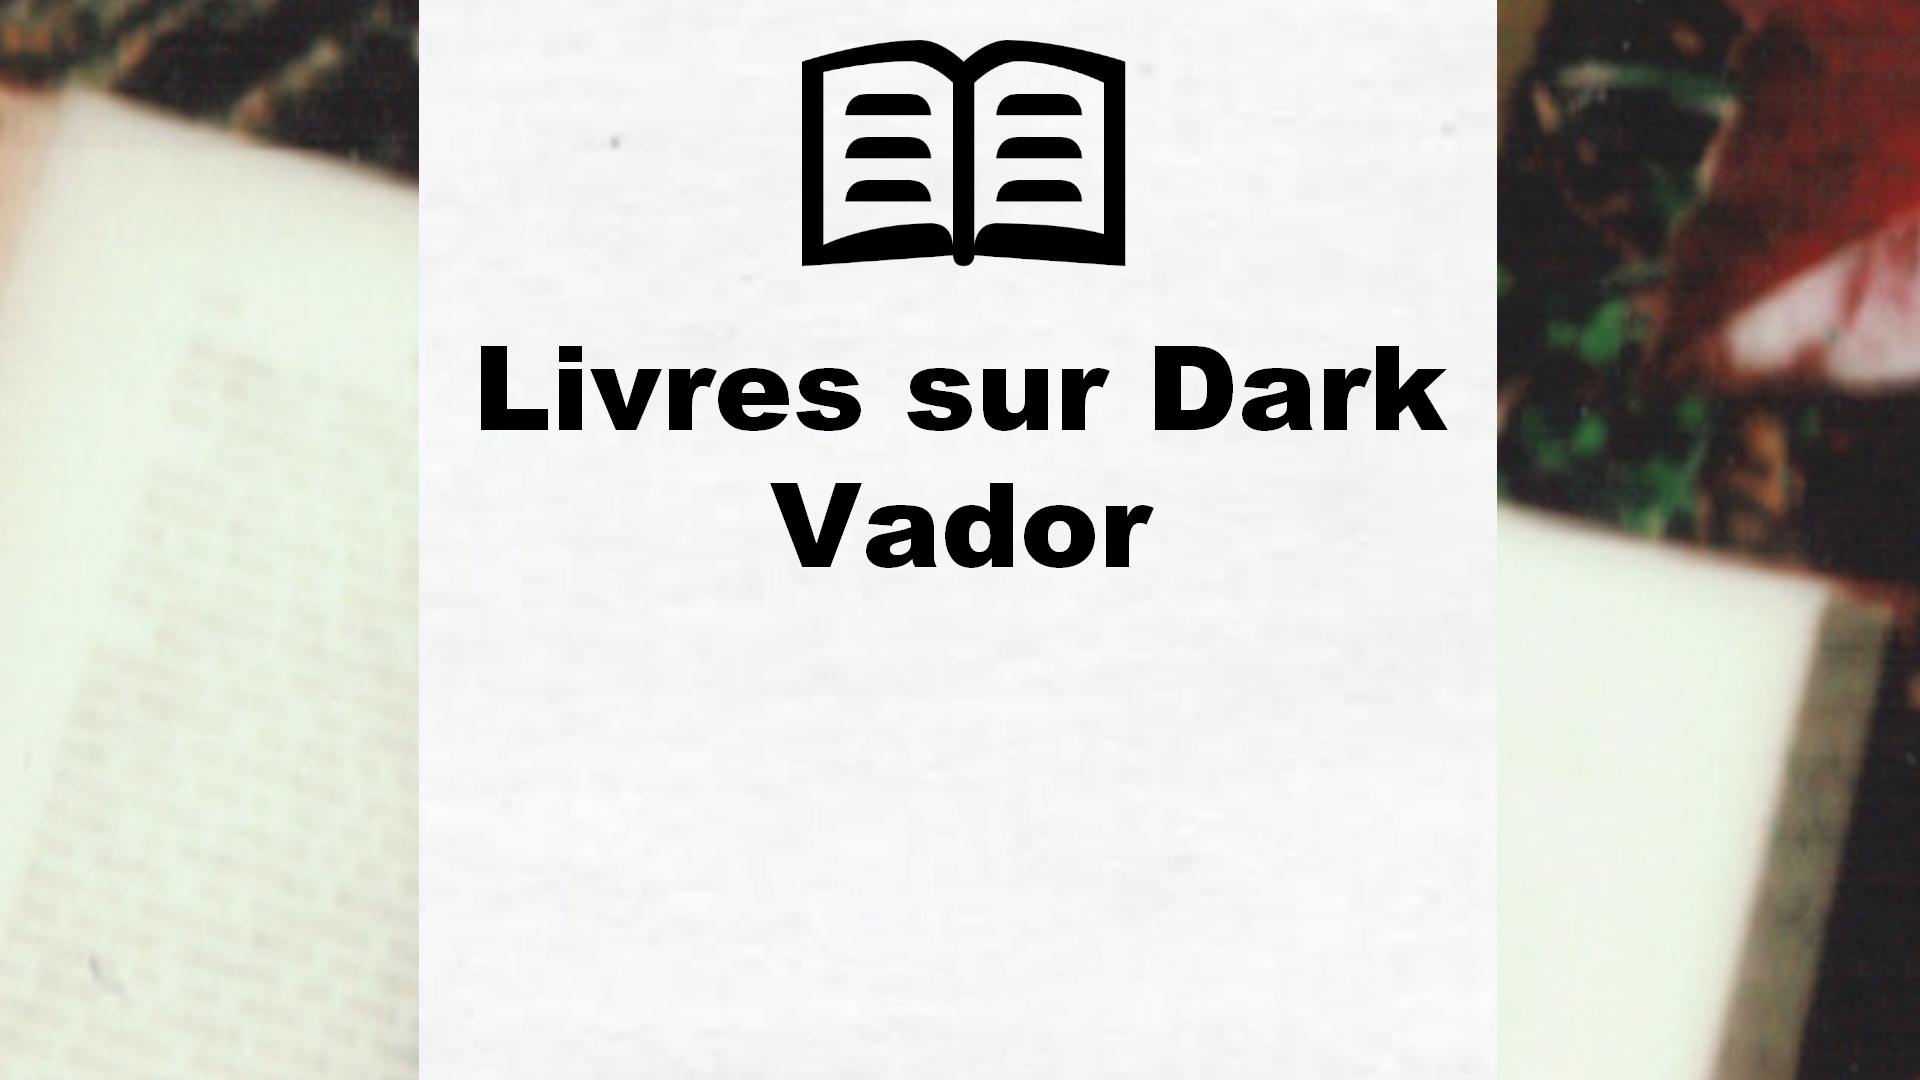 Livres sur Dark Vador